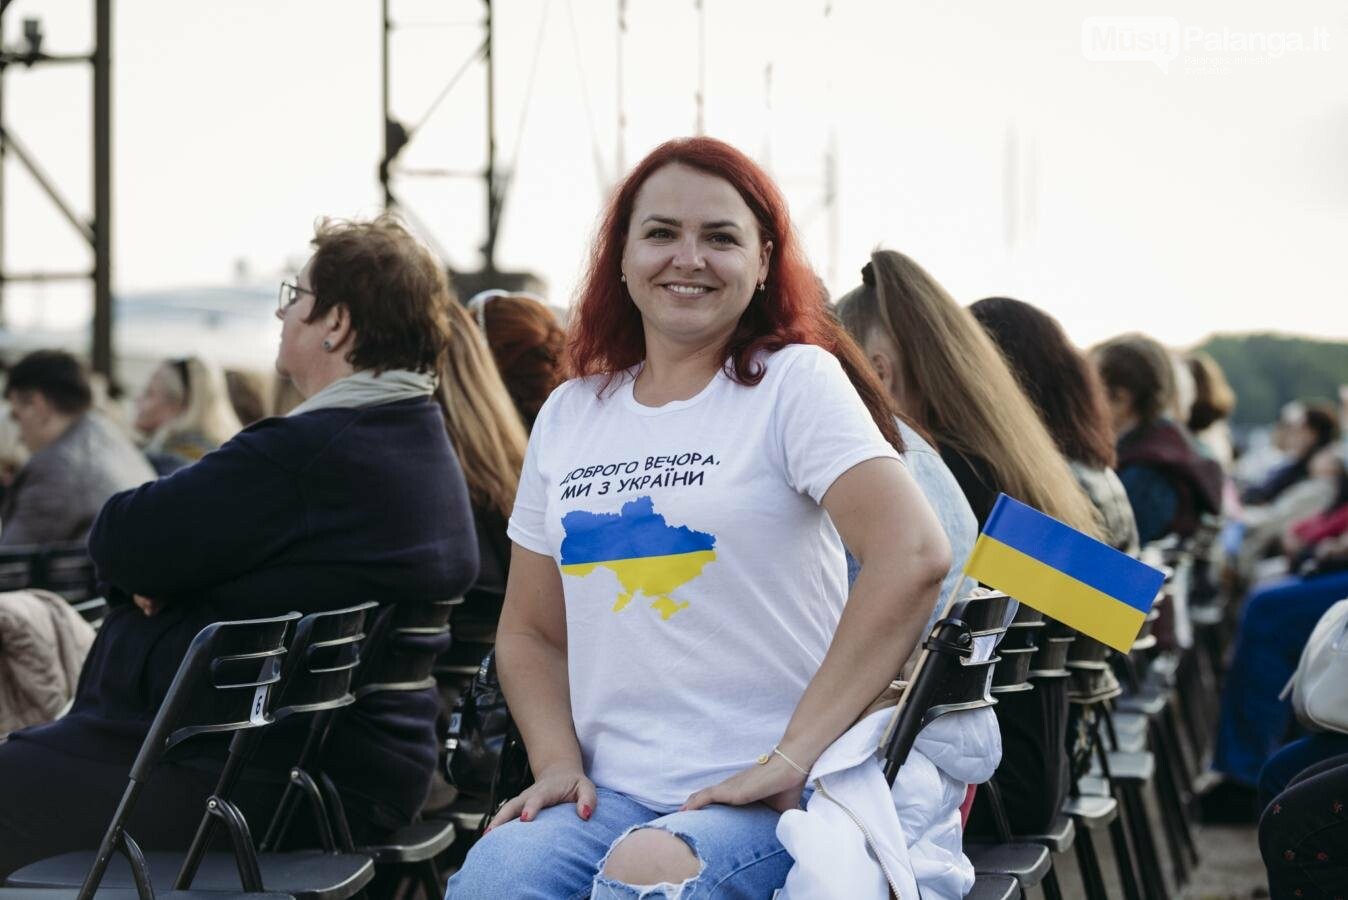 Klaipėdos festivalio pražios koncertas „Karo ir taikos dainos“ -  padėka ir padrąsinimas Ukrainos žmonėms, nuotrauka-2